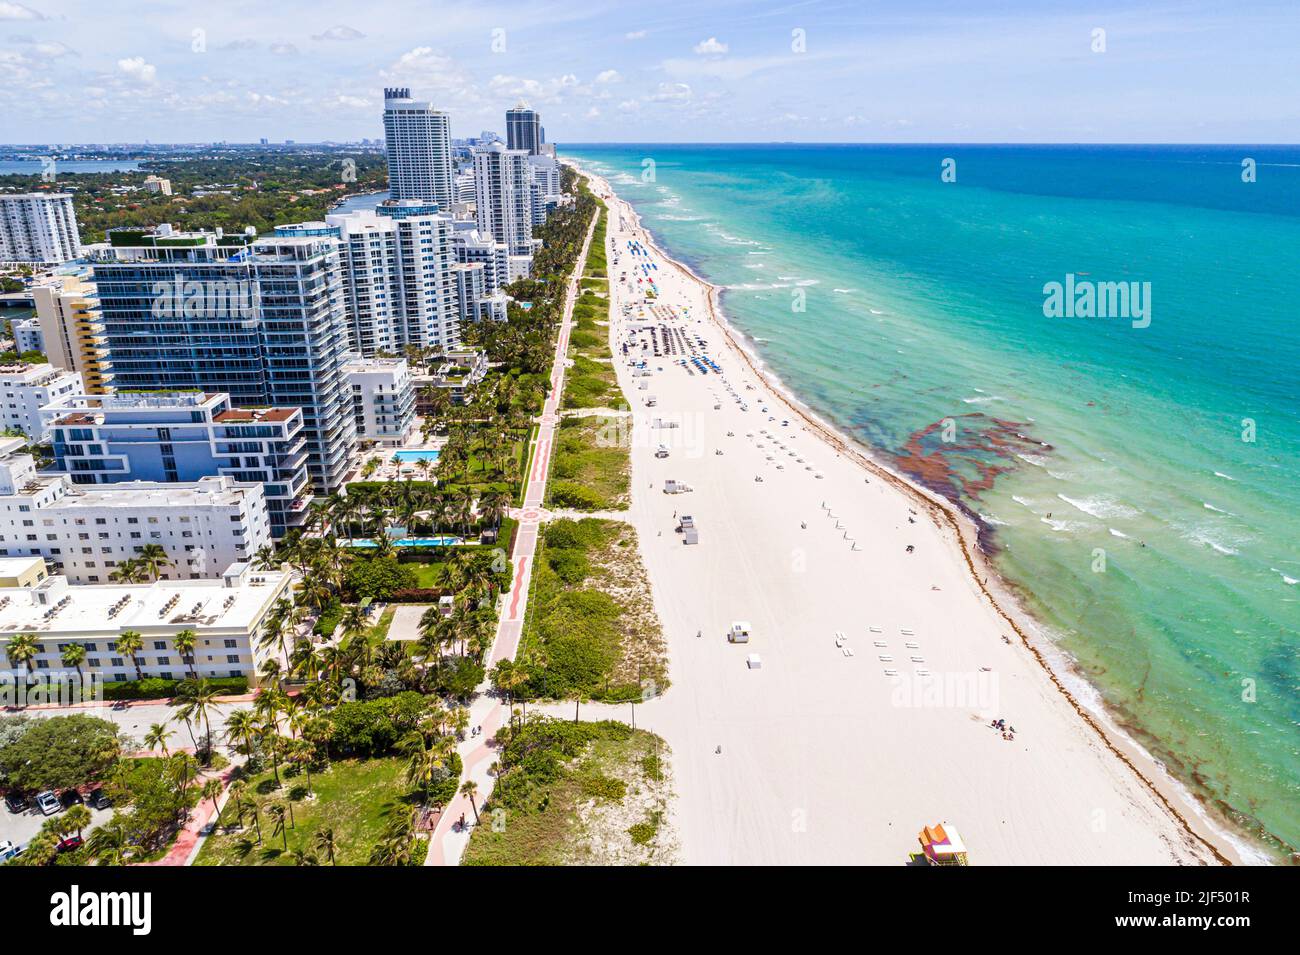 Miami Beach Florida, vue aérienne depuis le dessus, condominiums, front de mer, bord de mer, littoral Atlantique, plage publique Banque D'Images